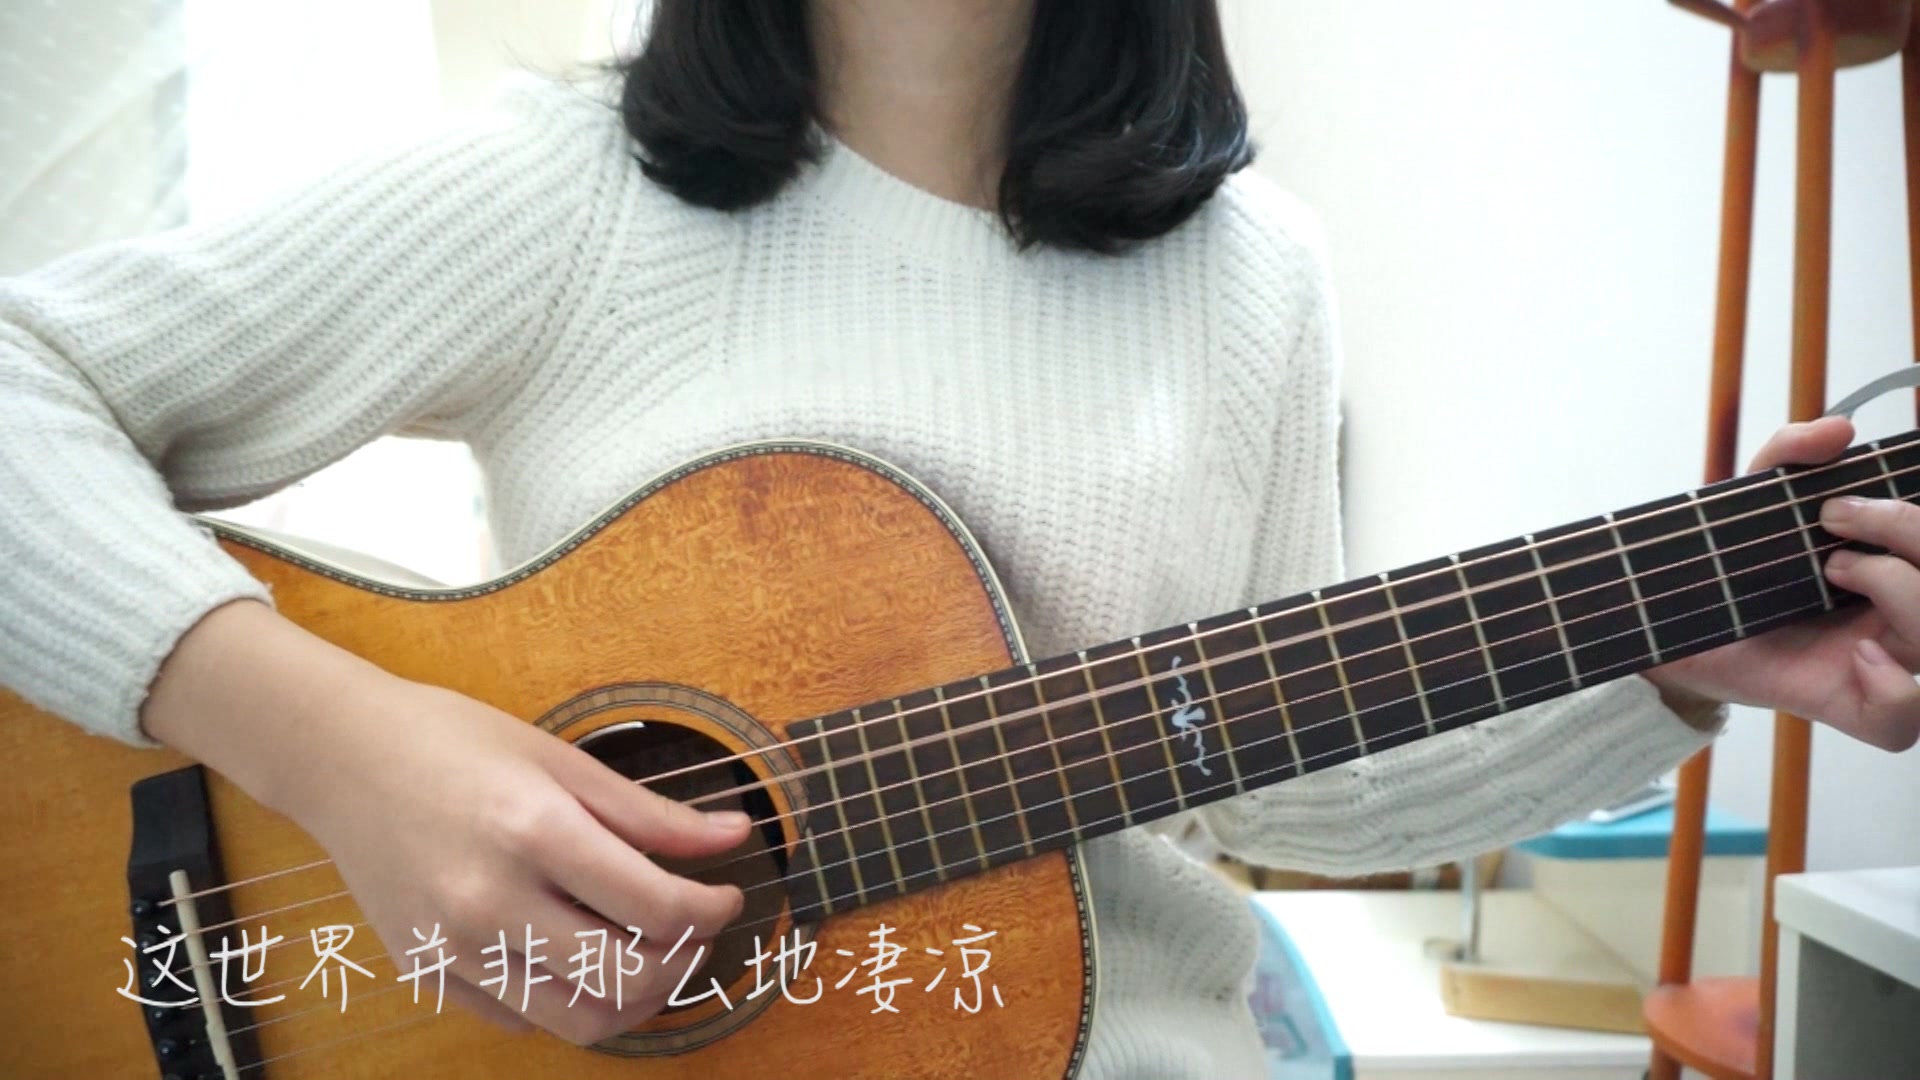 《张三的歌》吉他弹唱,手鼓伴奏(悦咚)_土豆视